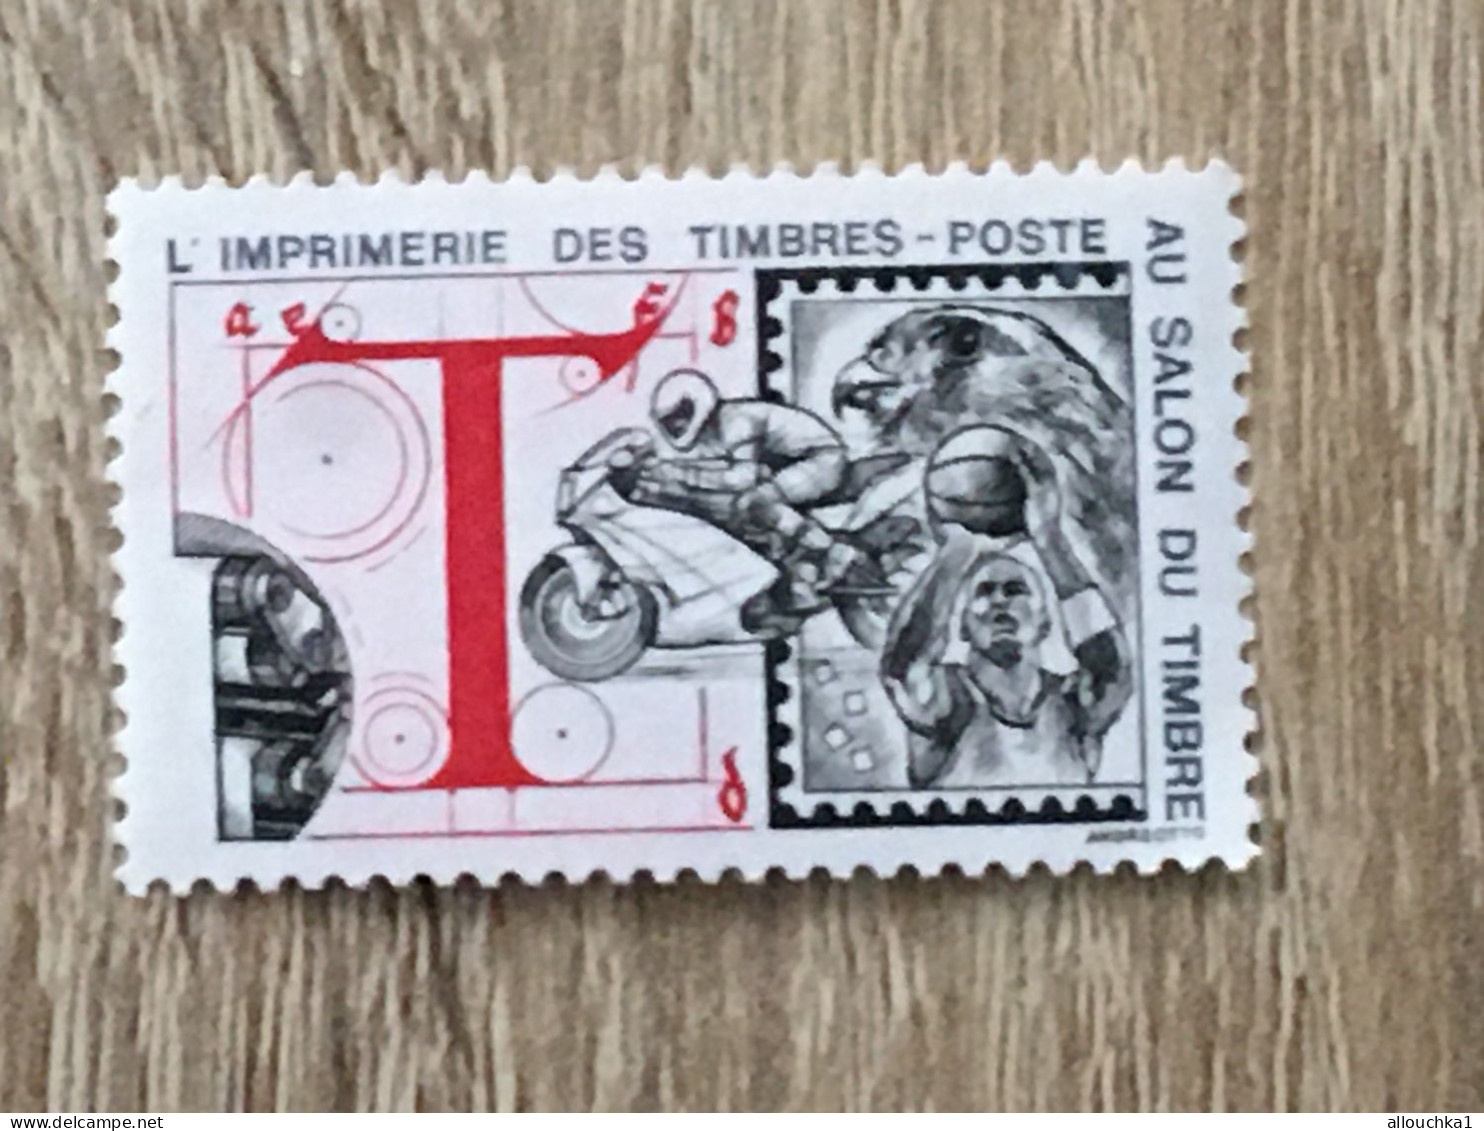 Imprimerie Timbres Poste Au Salon Du Timbre-2 Timbres Vignette**Expo-Philatélique-Erinnophilie-[E]Stamp-Sticker-Viñeta - Briefmarkenmessen